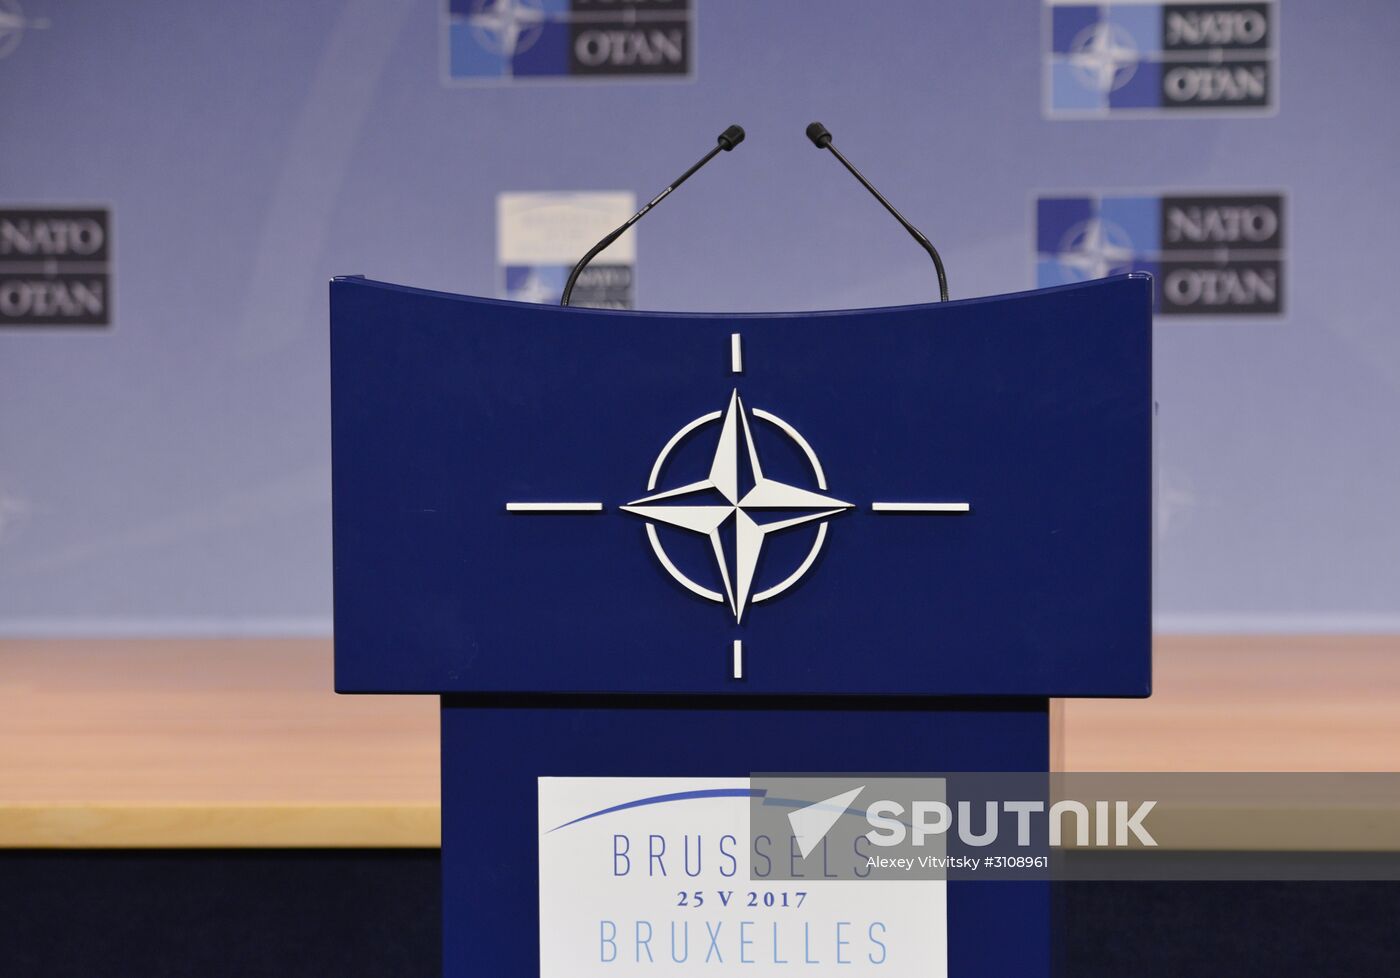 Tribune in press conference hall at NATO Headquarters